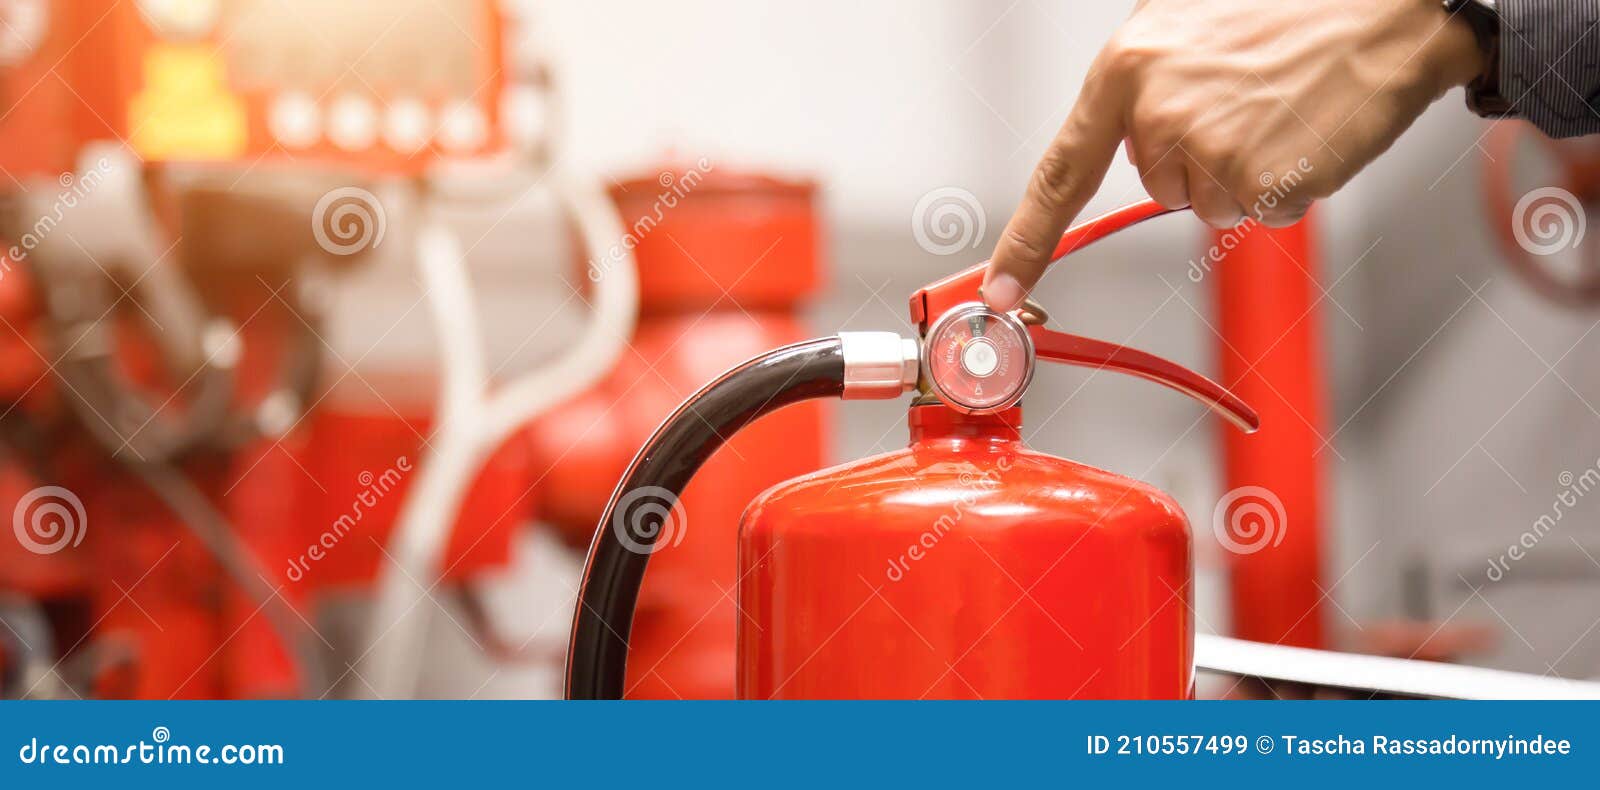 Inspeção de extintores de incêndio